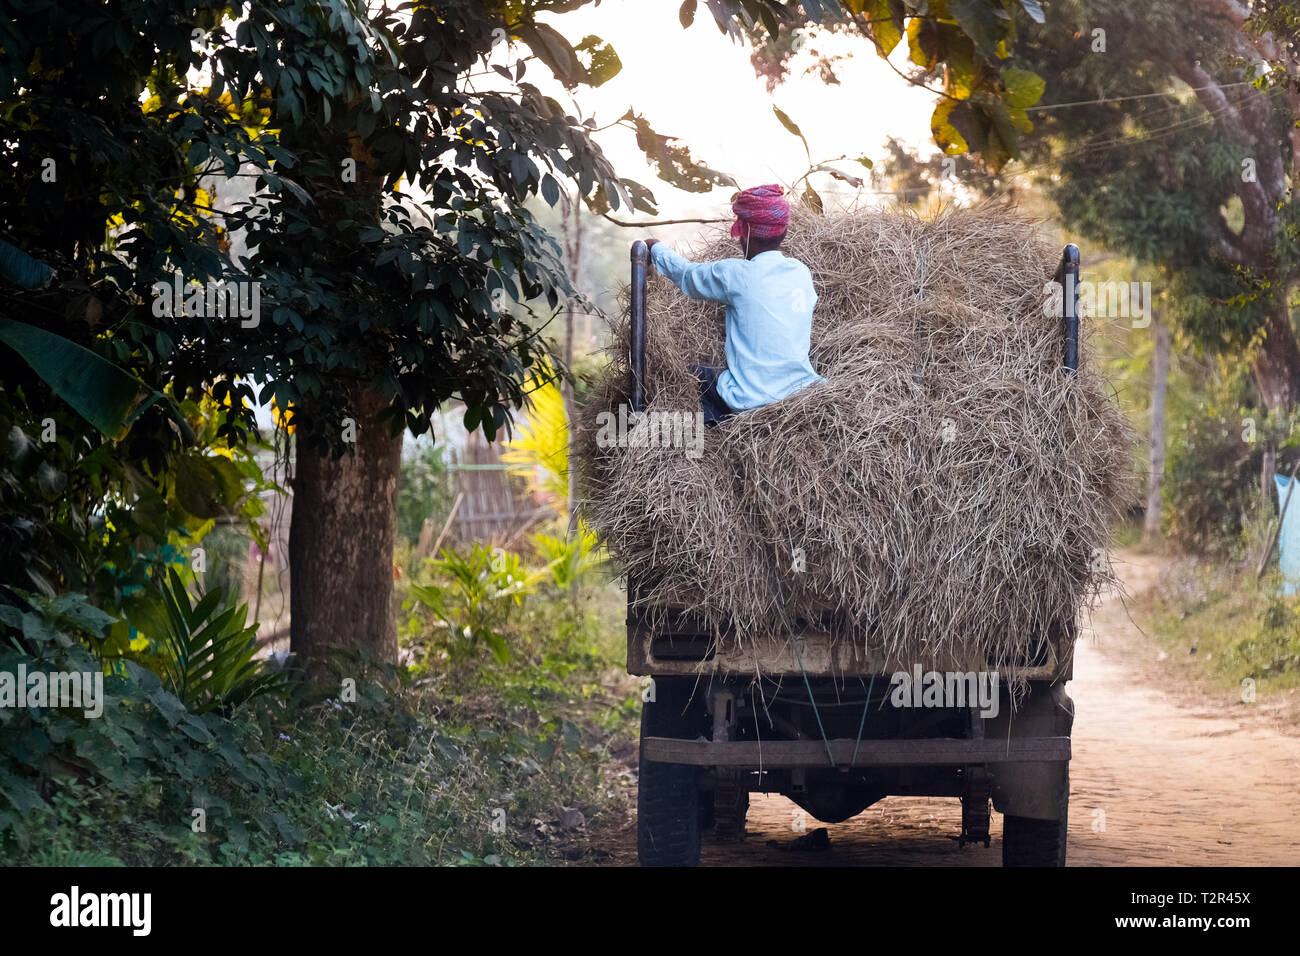 Mann sitzt auf einem Lkw mit Heu als Tierfutter verwendet. Dorf in der Nähe der Stadt Argatala, Tripura, Nordosten Indiens Stockfoto